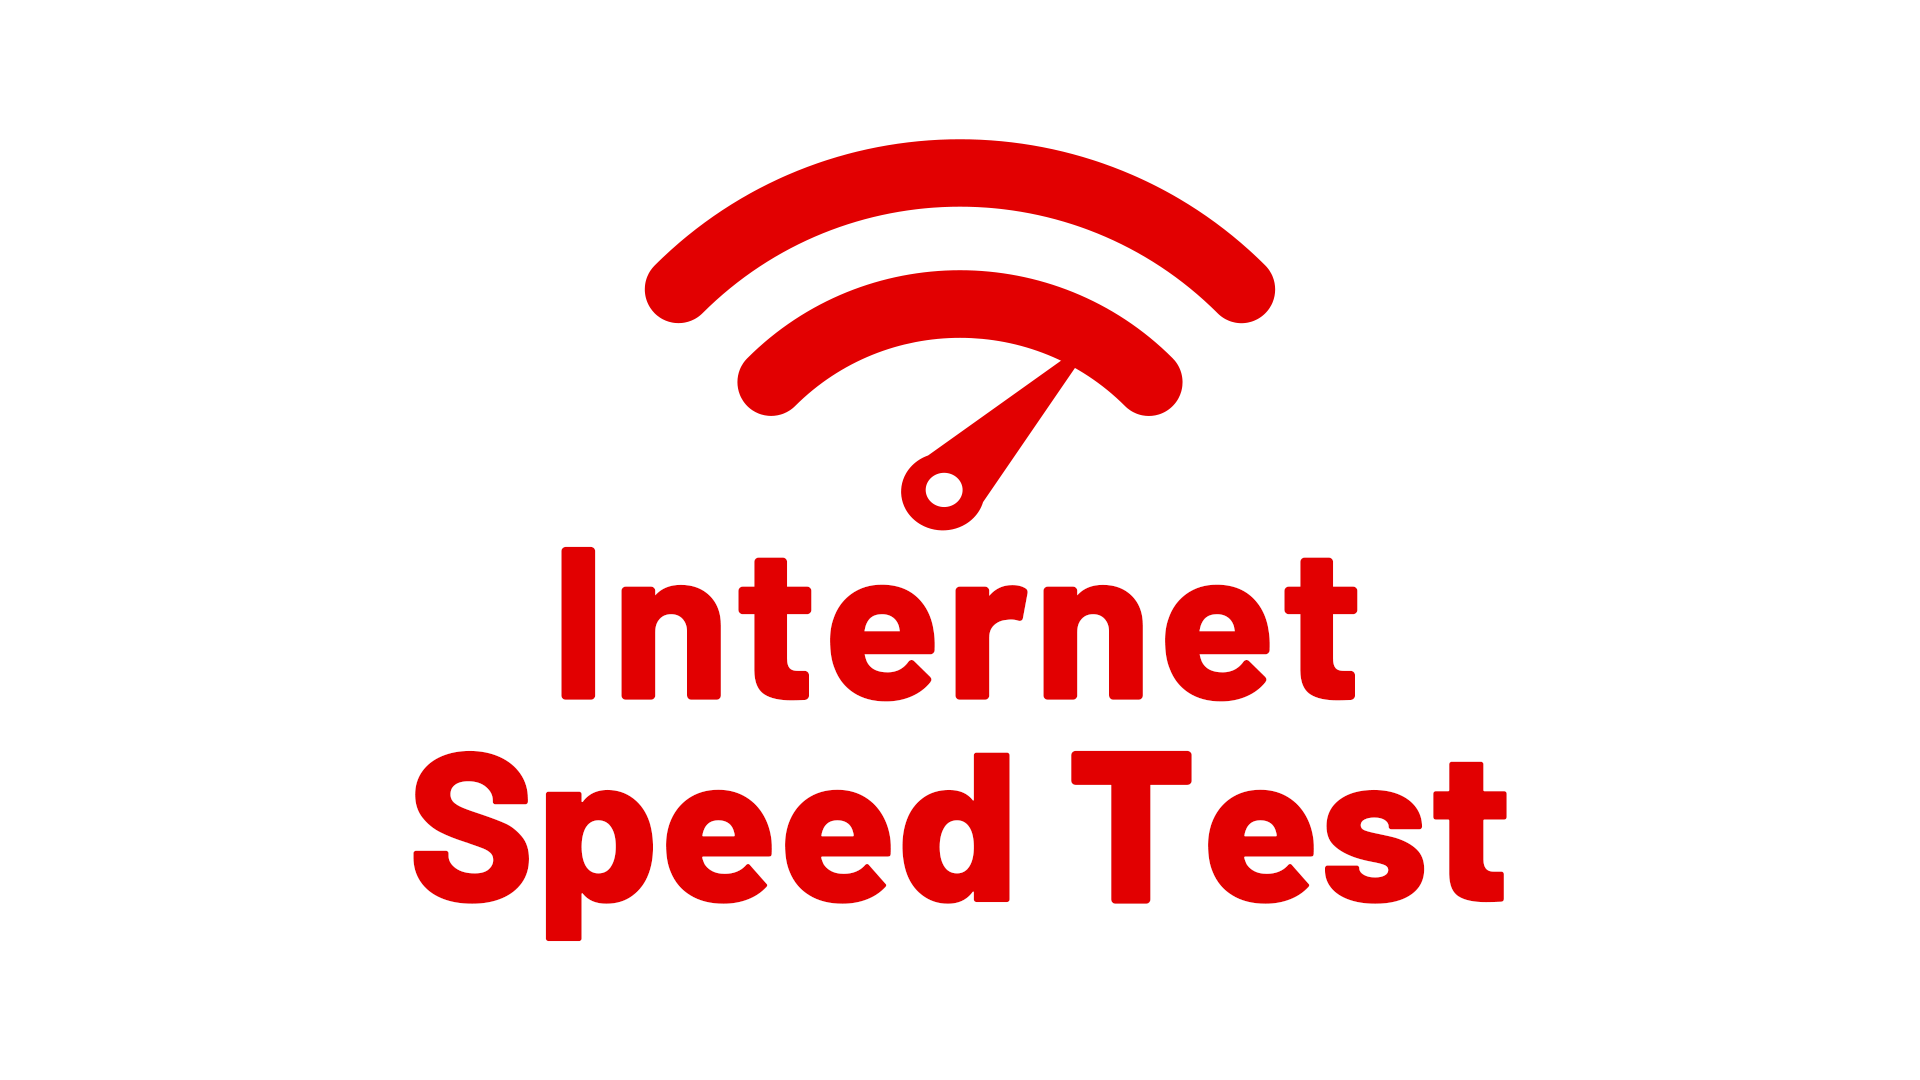 Spectrum speed test internet speed